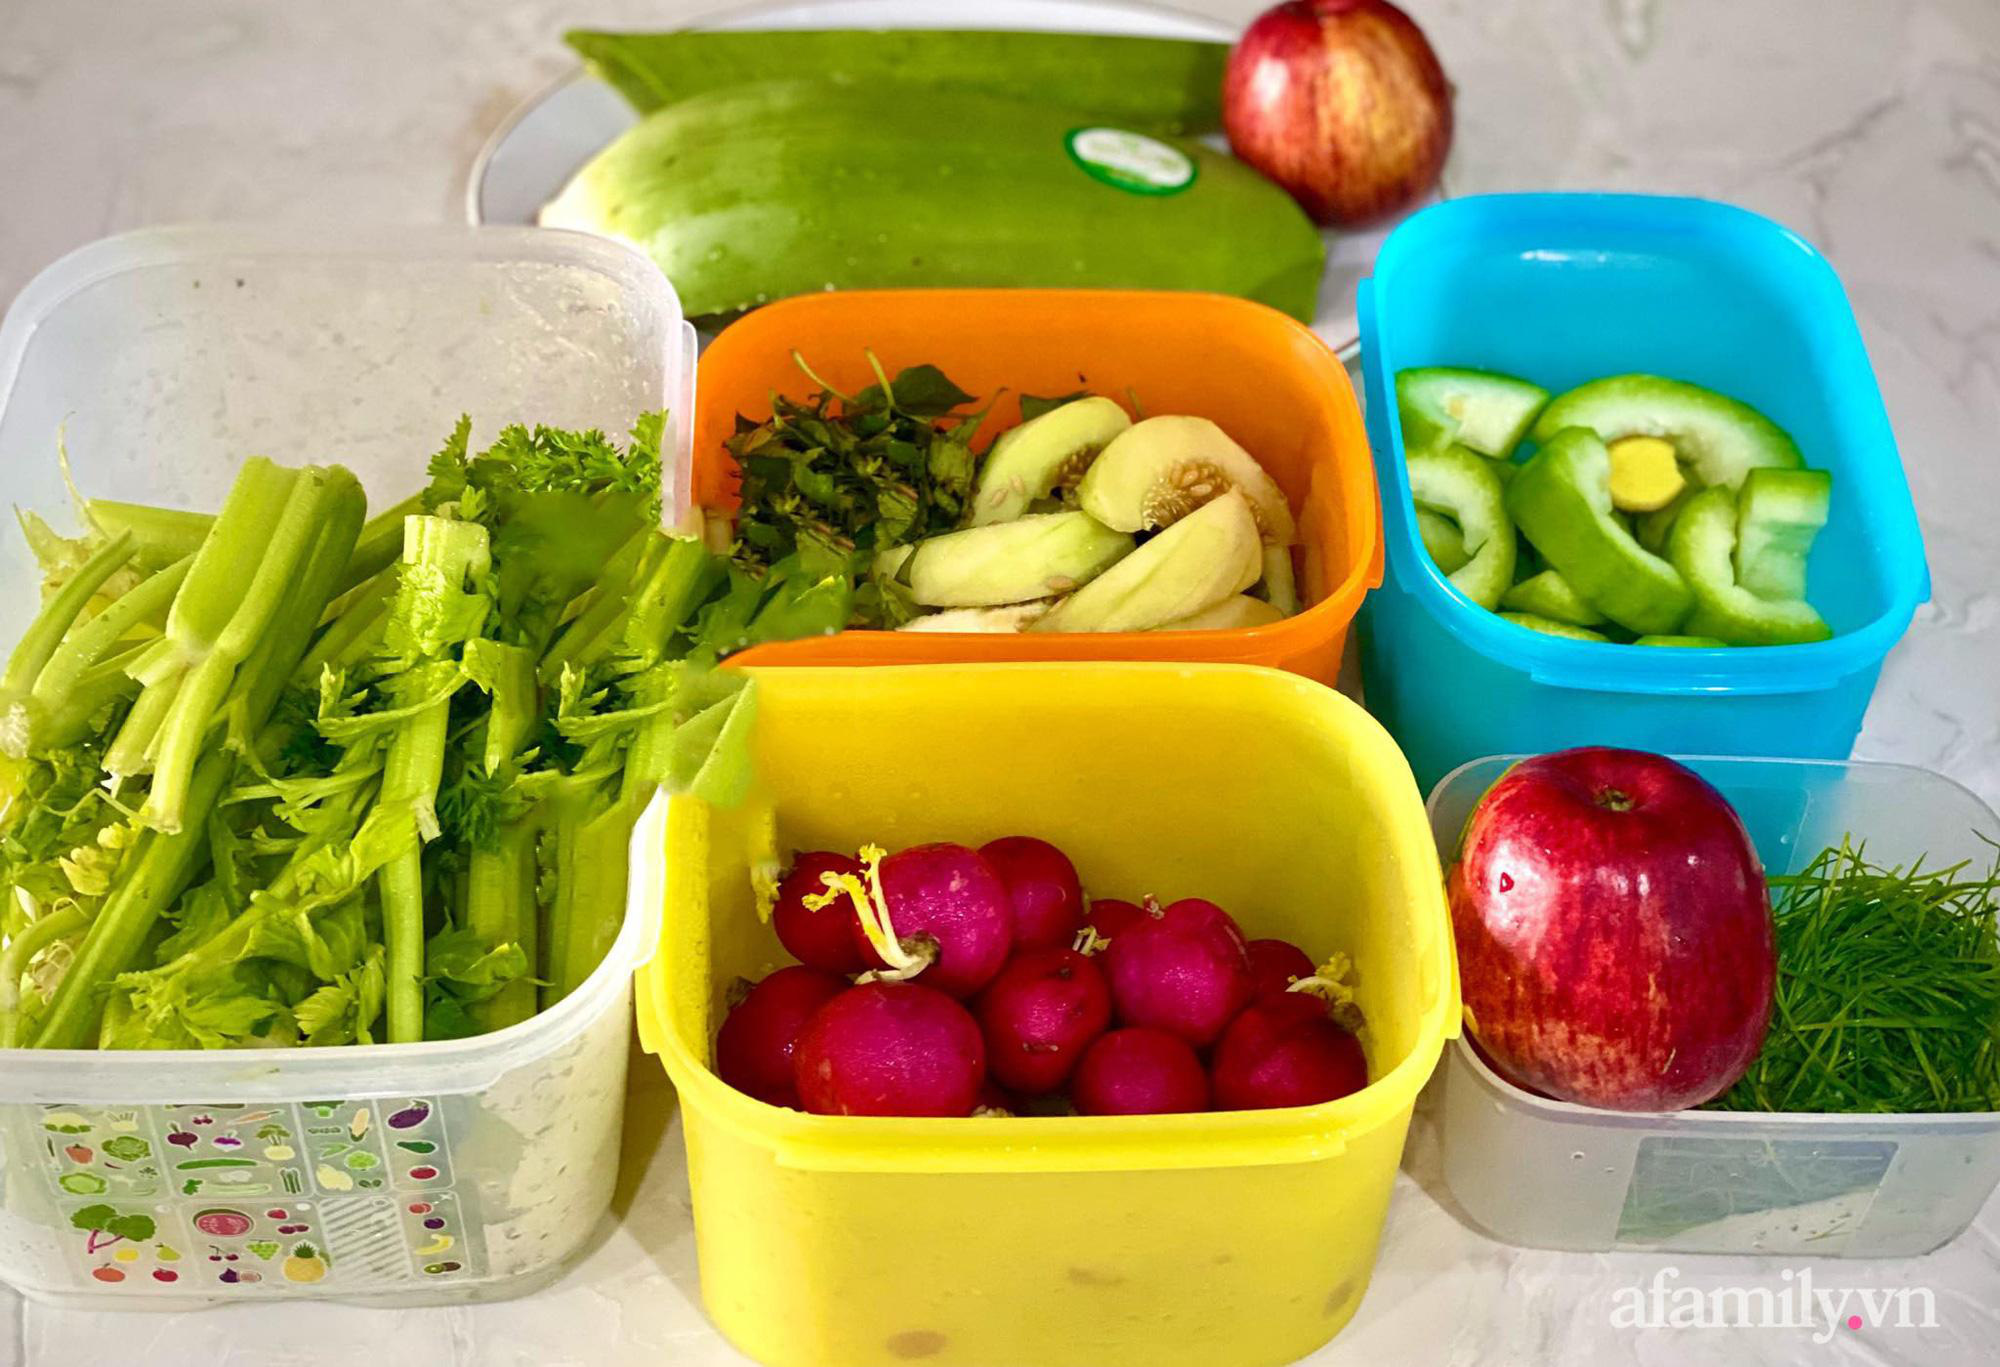 Mẹo bảo quản thực phẩm mùa giãn cách: đồ ăn tươi ngon, tủ lạnh gọn gàng ngăn nắp - Ảnh 3.